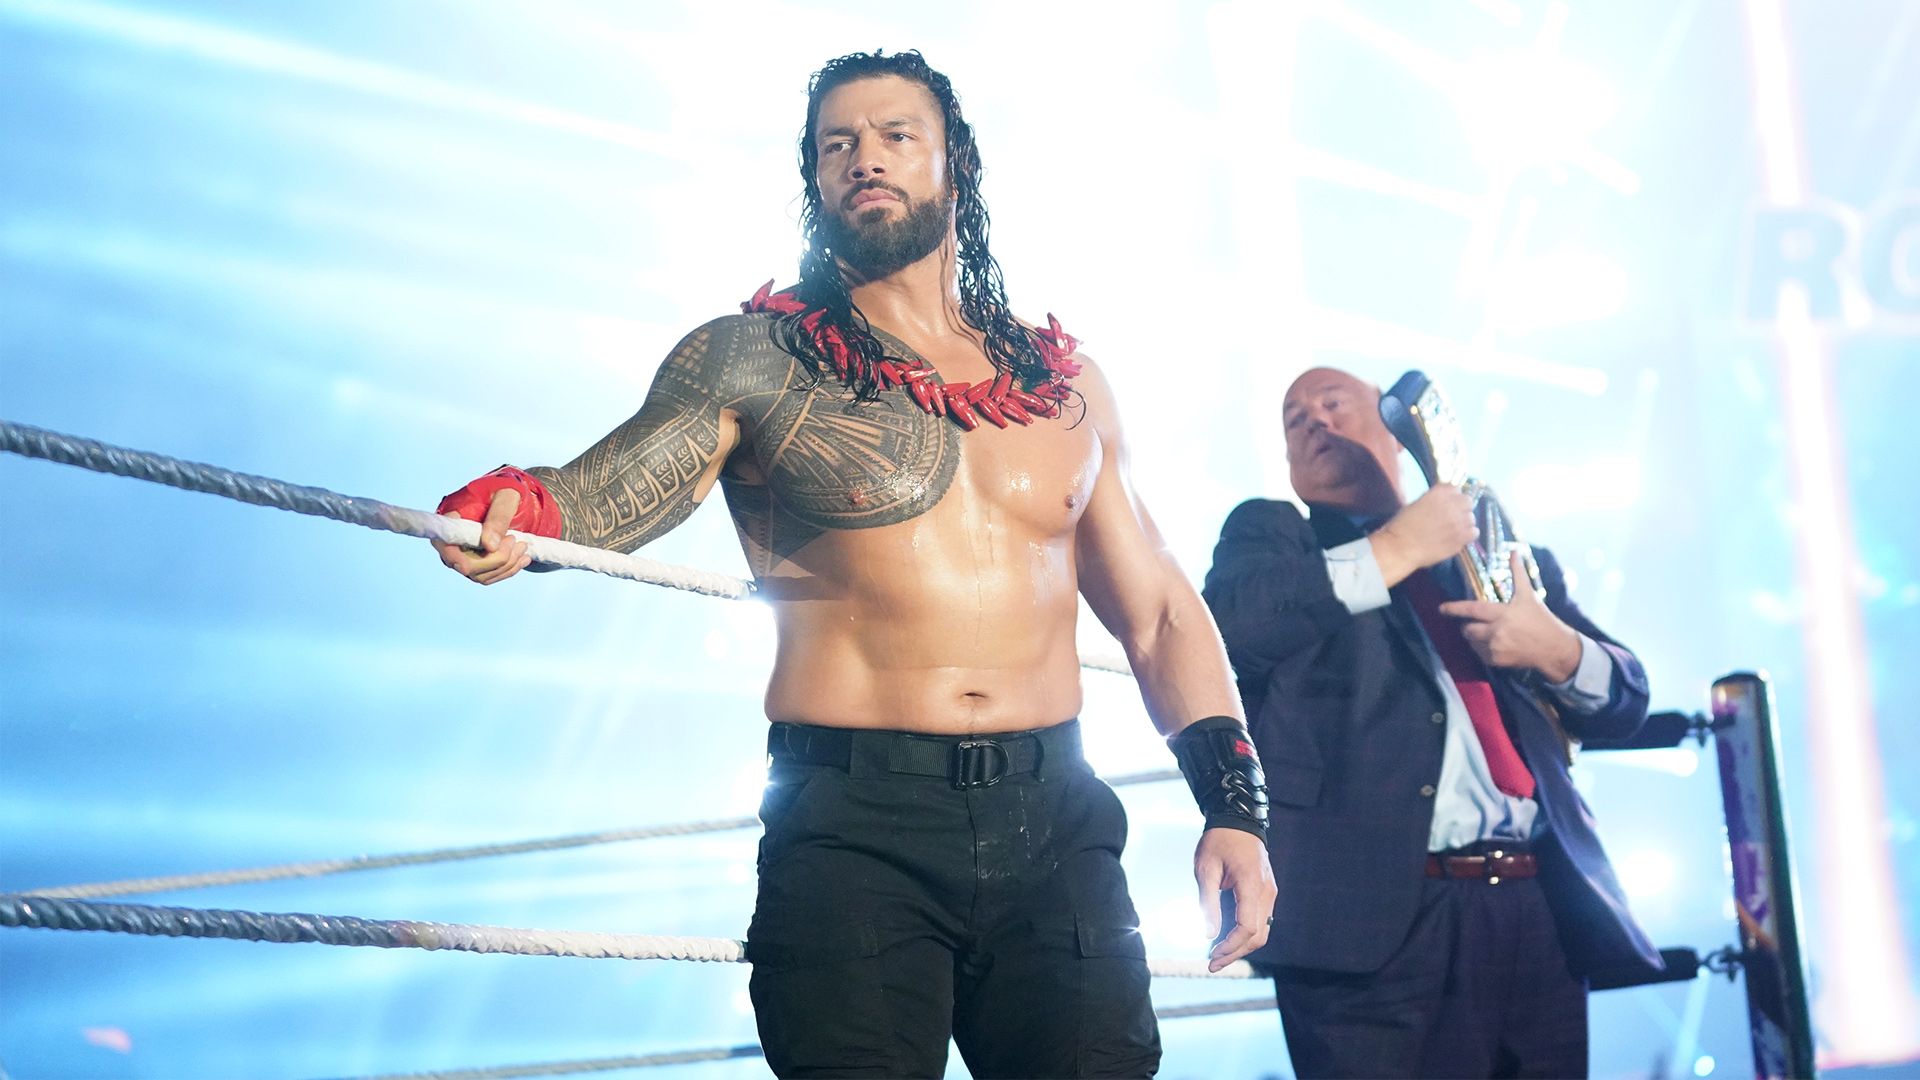 اتحاد WWE يقع في ترويج كاذب بسبب رومان رينز